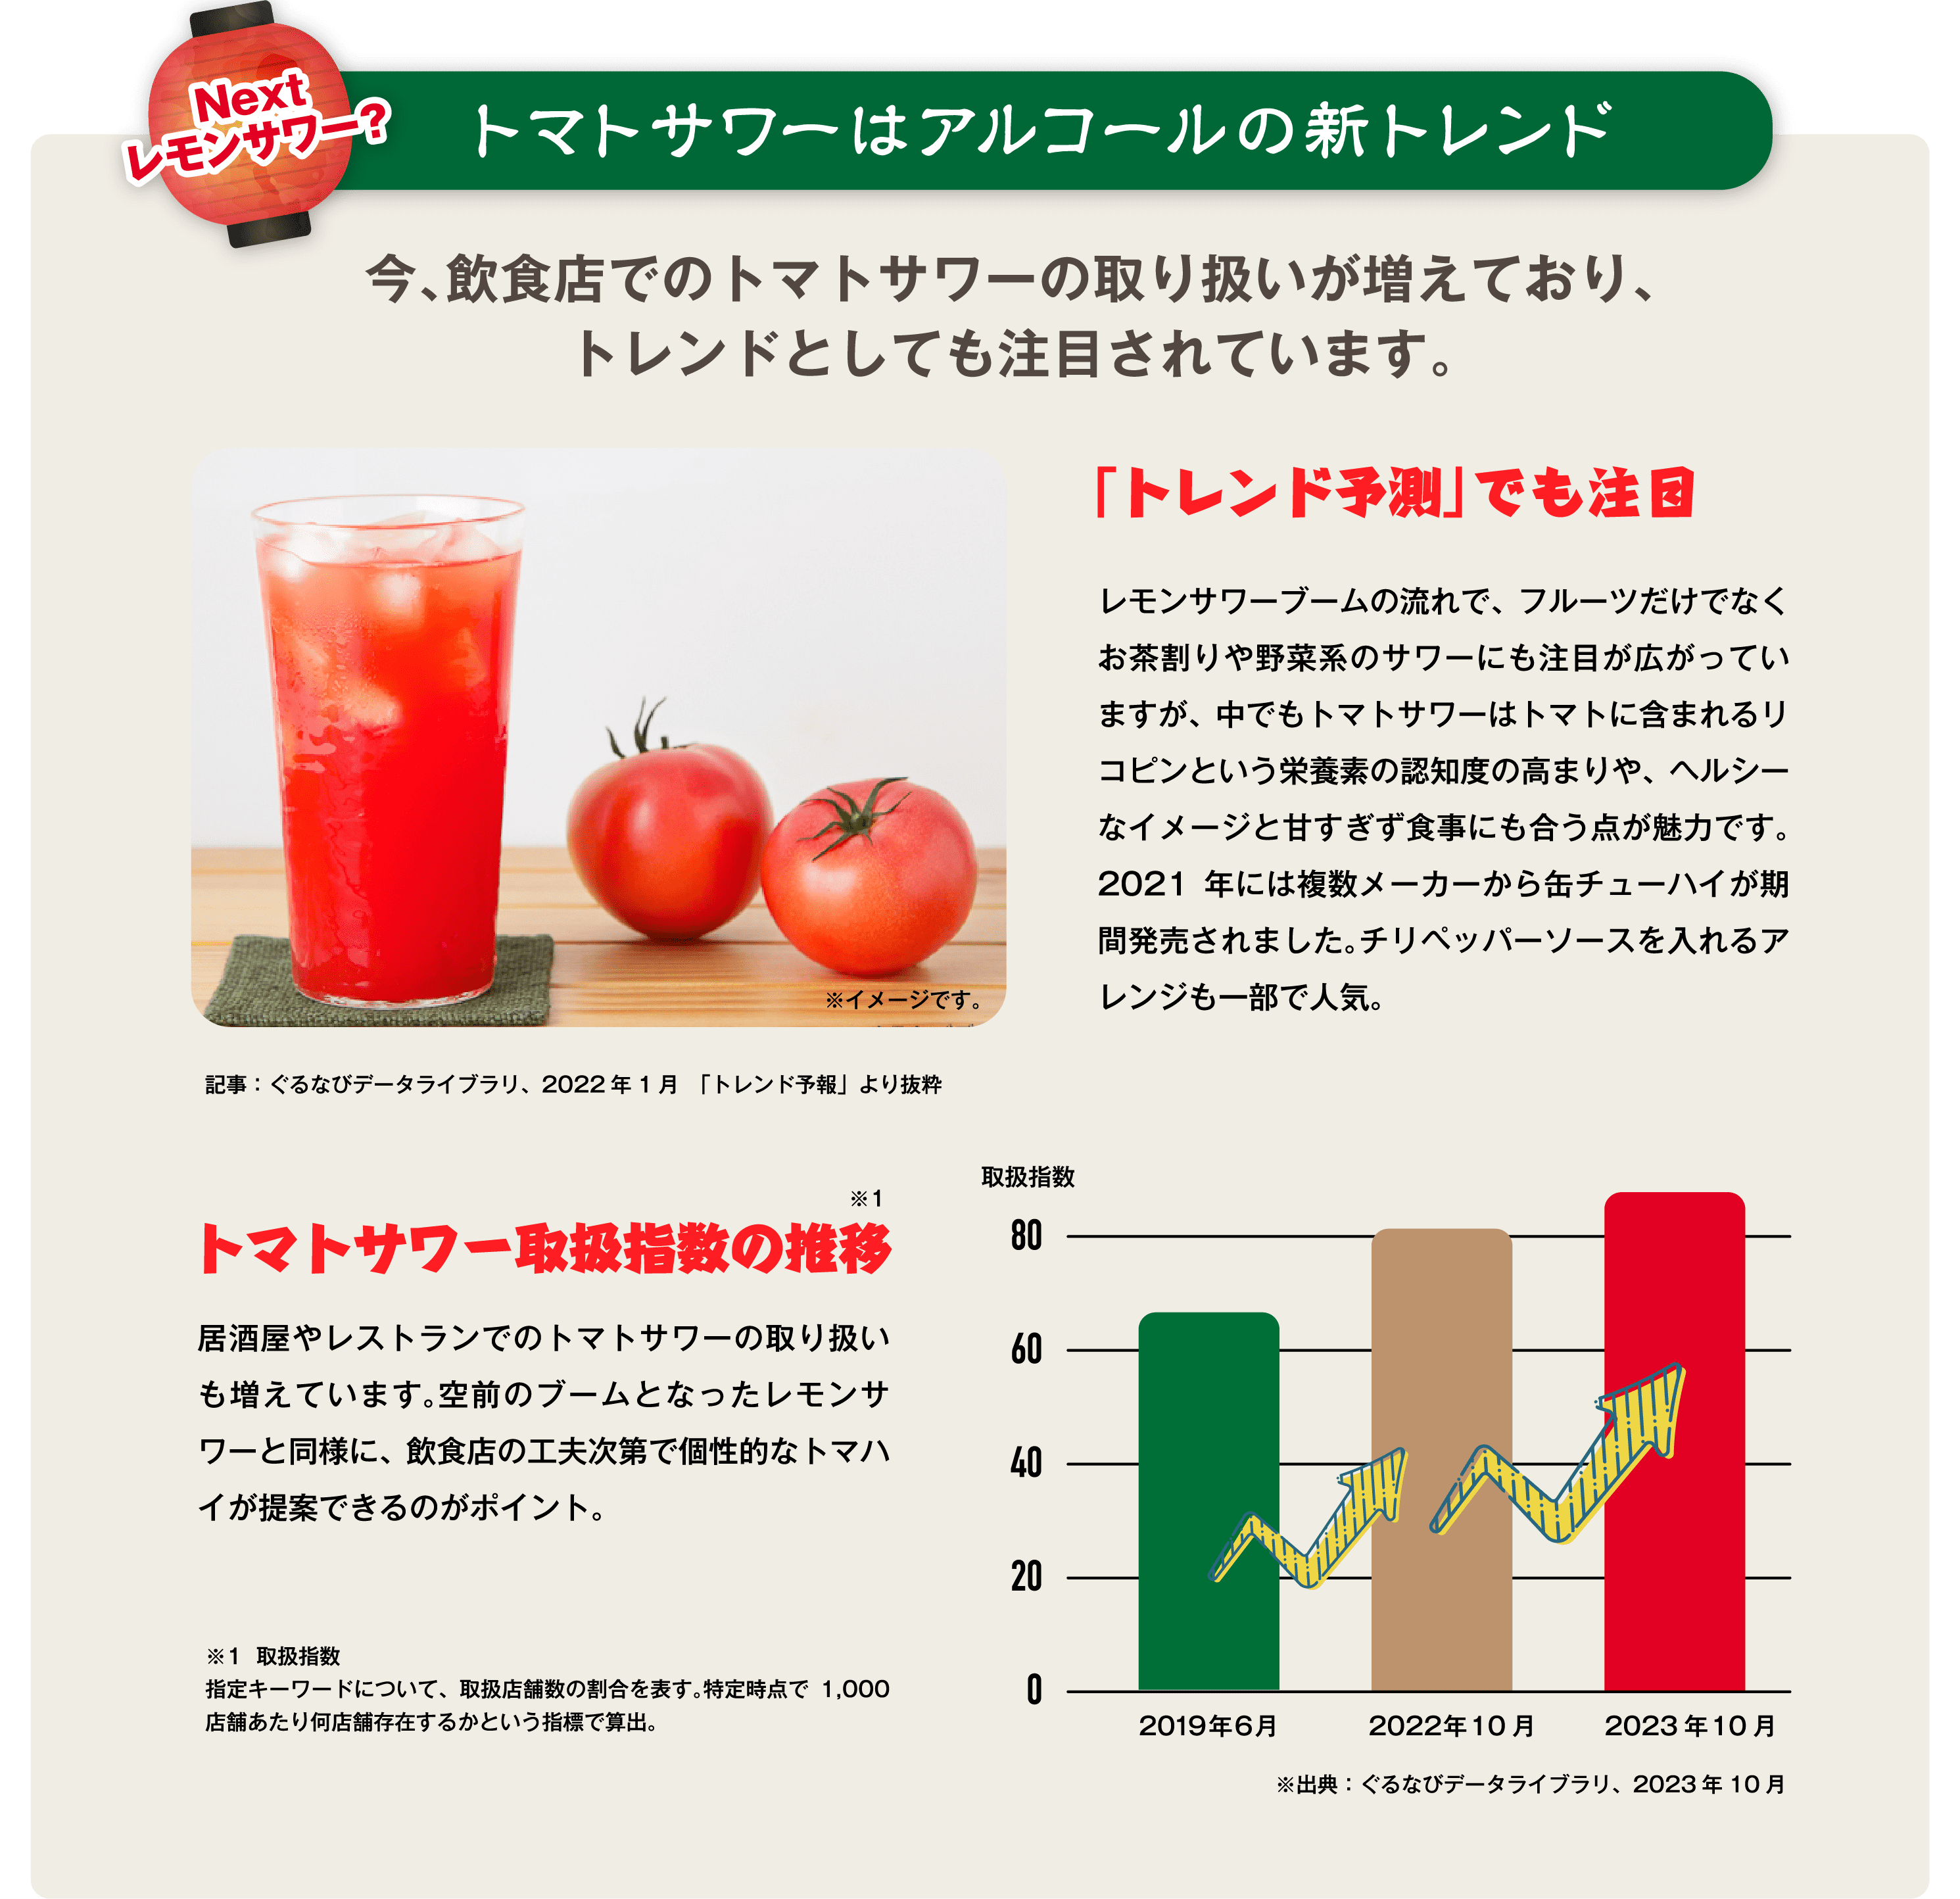 トマトサワーはアルコールの新トレンド 今、飲食店でのトマトサワーの取り扱いが増えており、トレンドとしても注目されています。